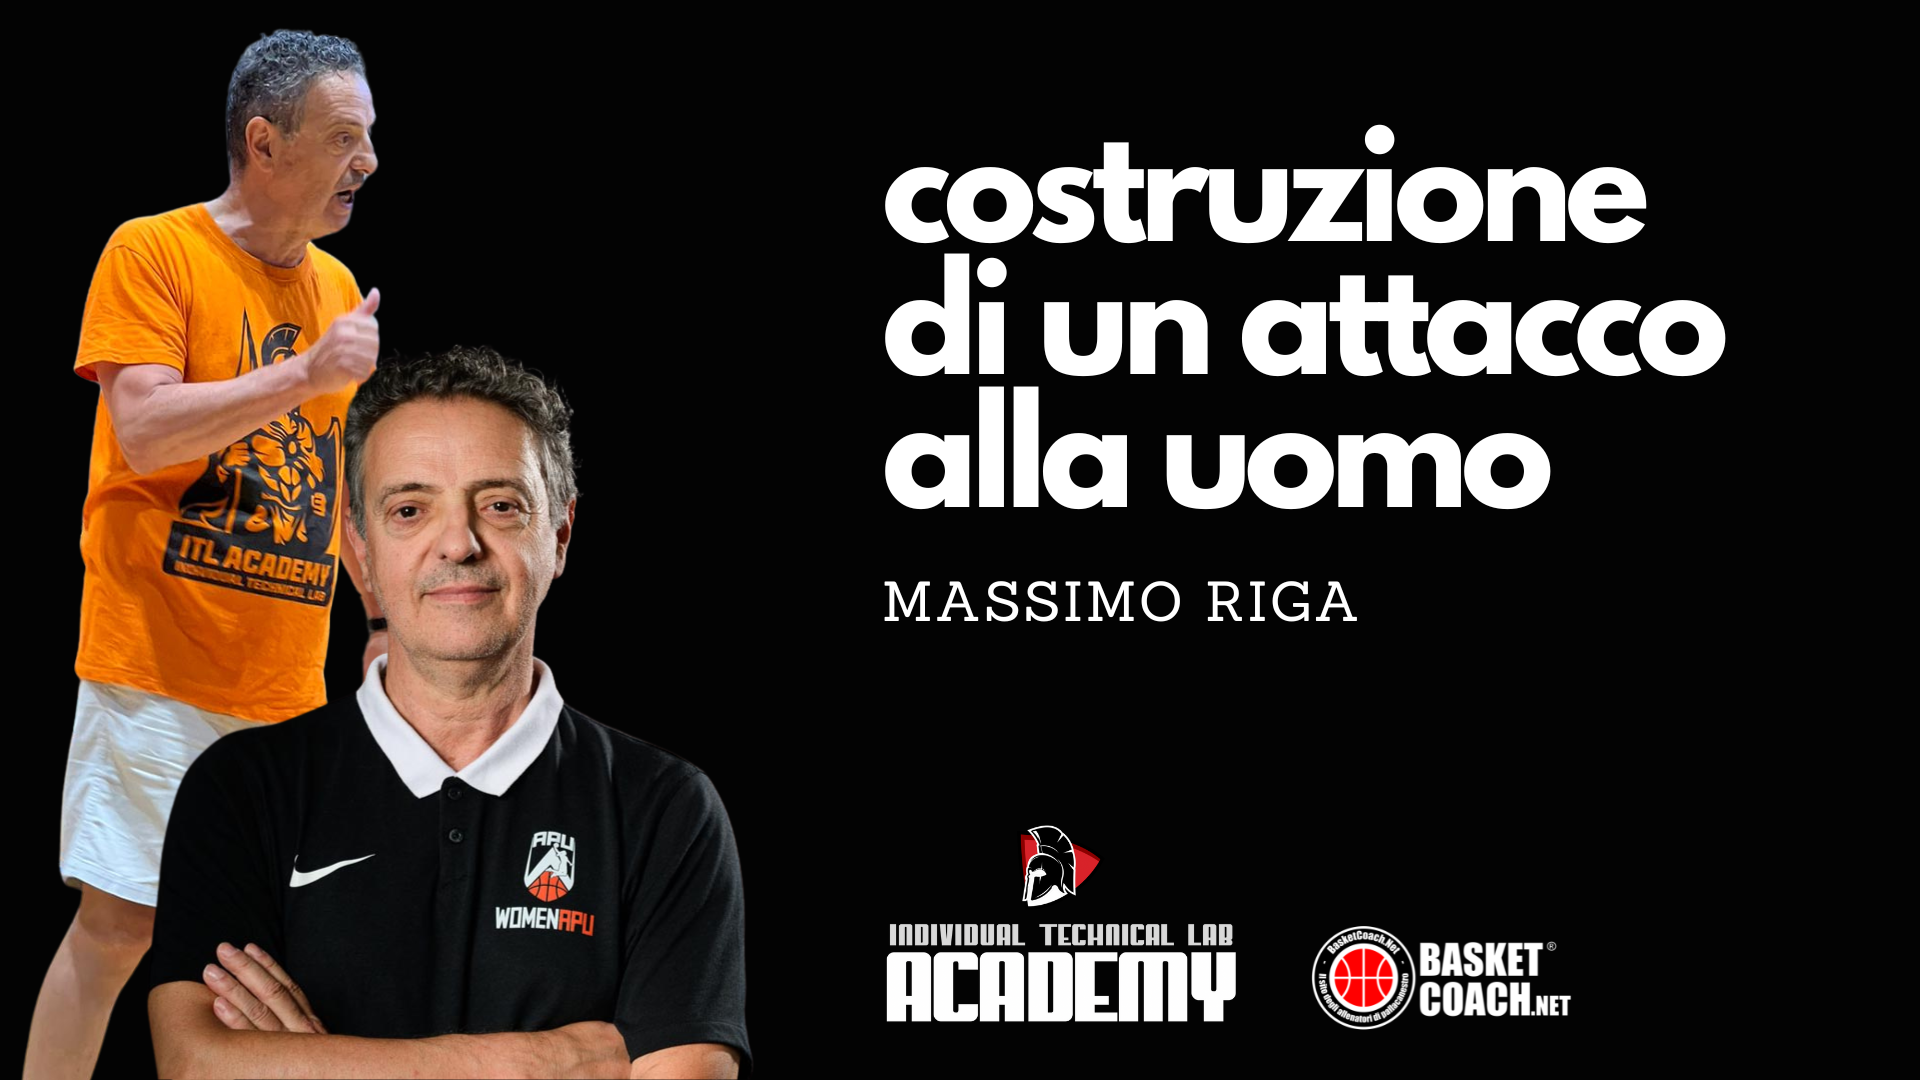 <p>Un allenamento con Massimo Riga, costruzione di un attacco alla uomo</p>
